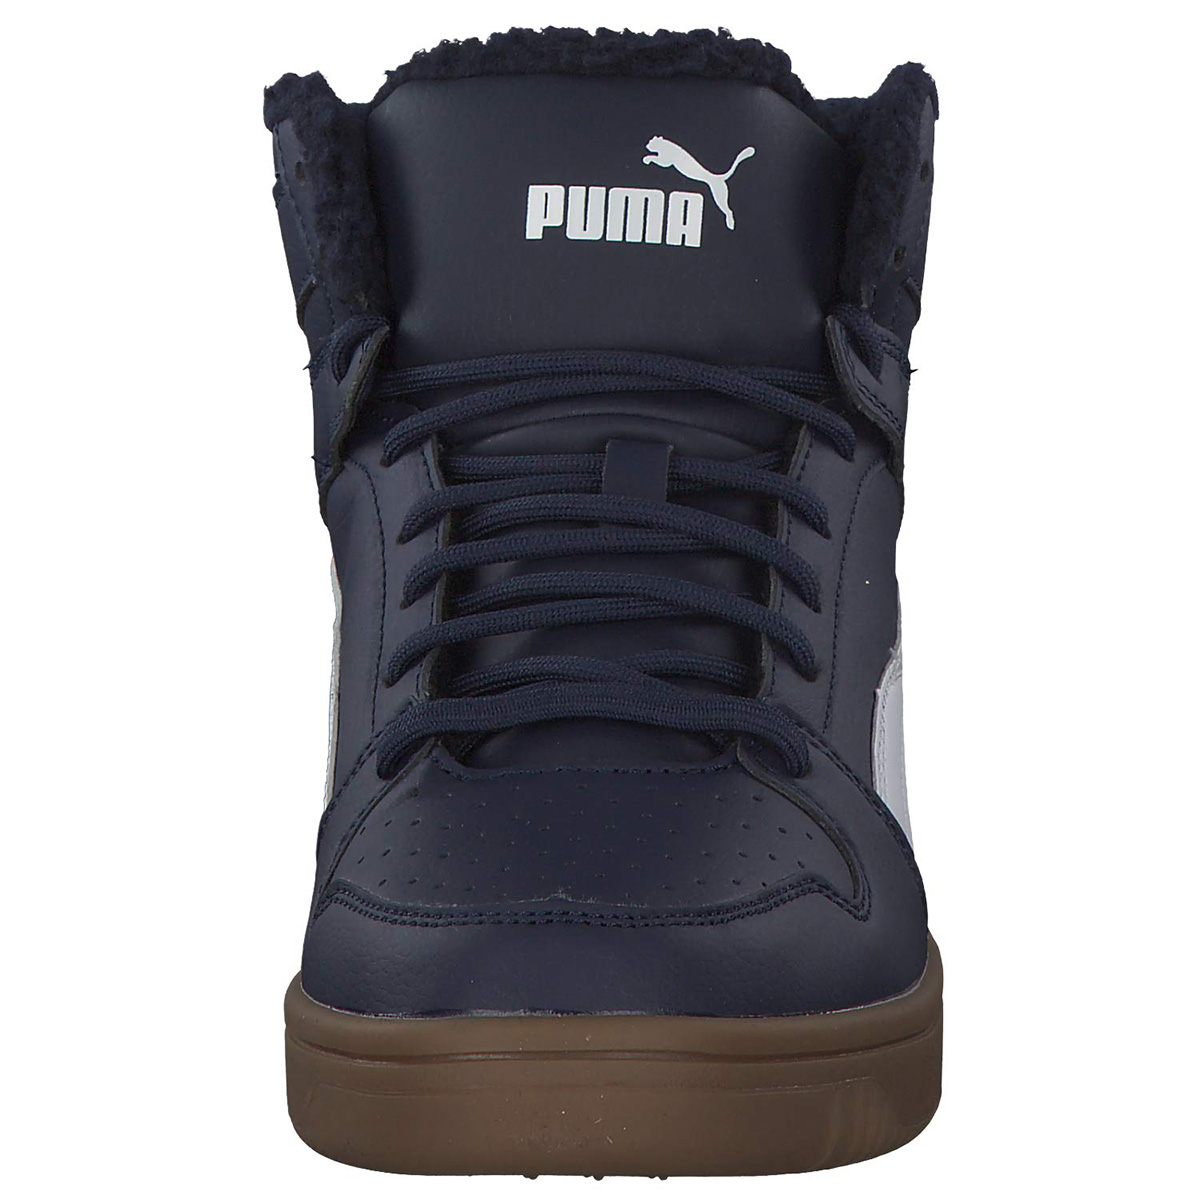 Puma Rebound Layup SL Fur Winterstiefel Boots Unisex Blau gefüttert warm